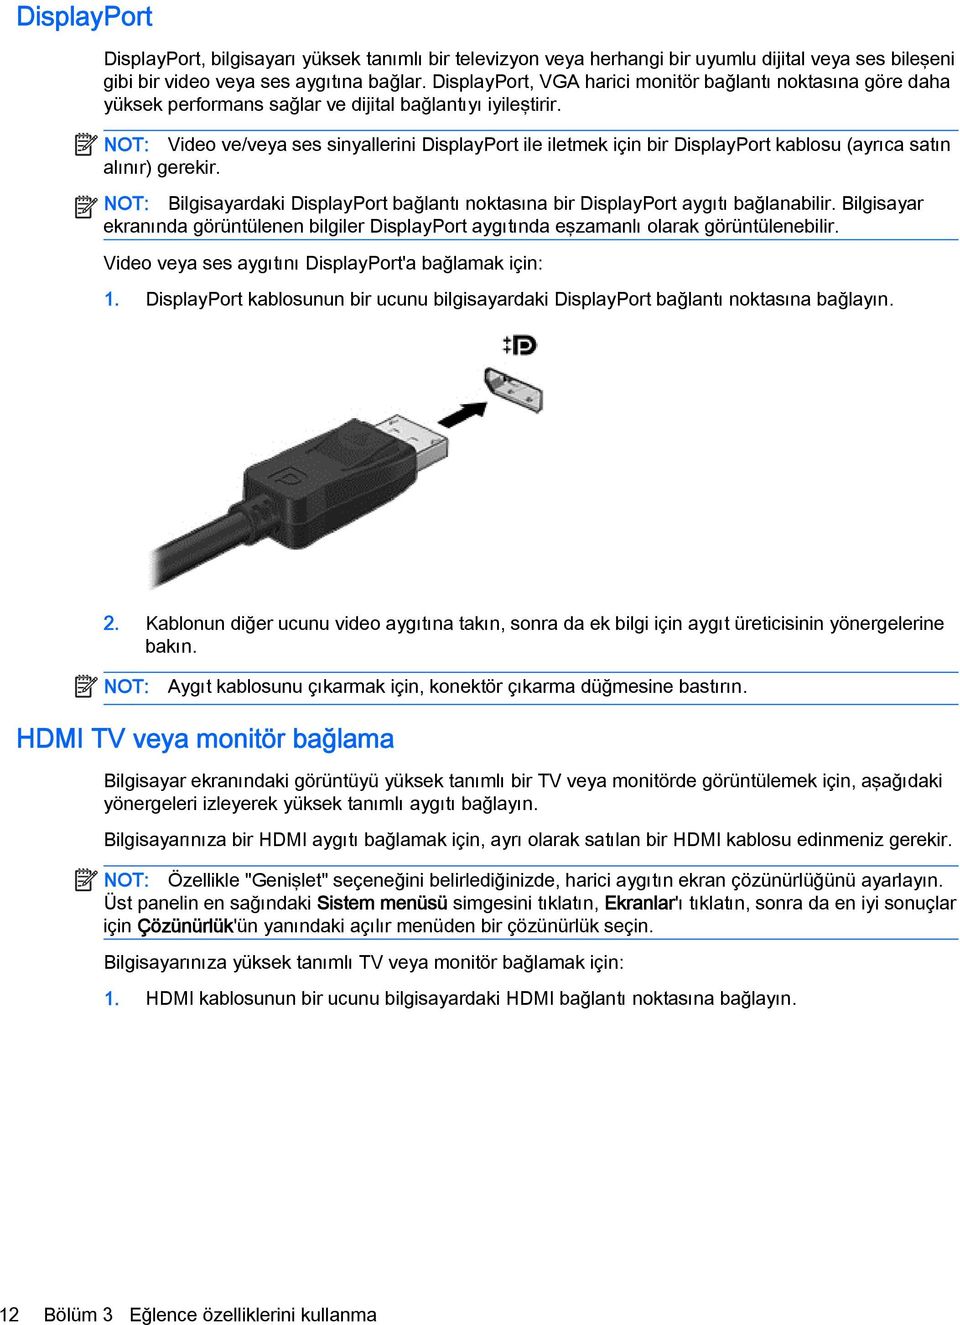 NOT: Video ve/veya ses sinyallerini DisplayPort ile iletmek için bir DisplayPort kablosu (ayrıca satın alınır) gerekir.